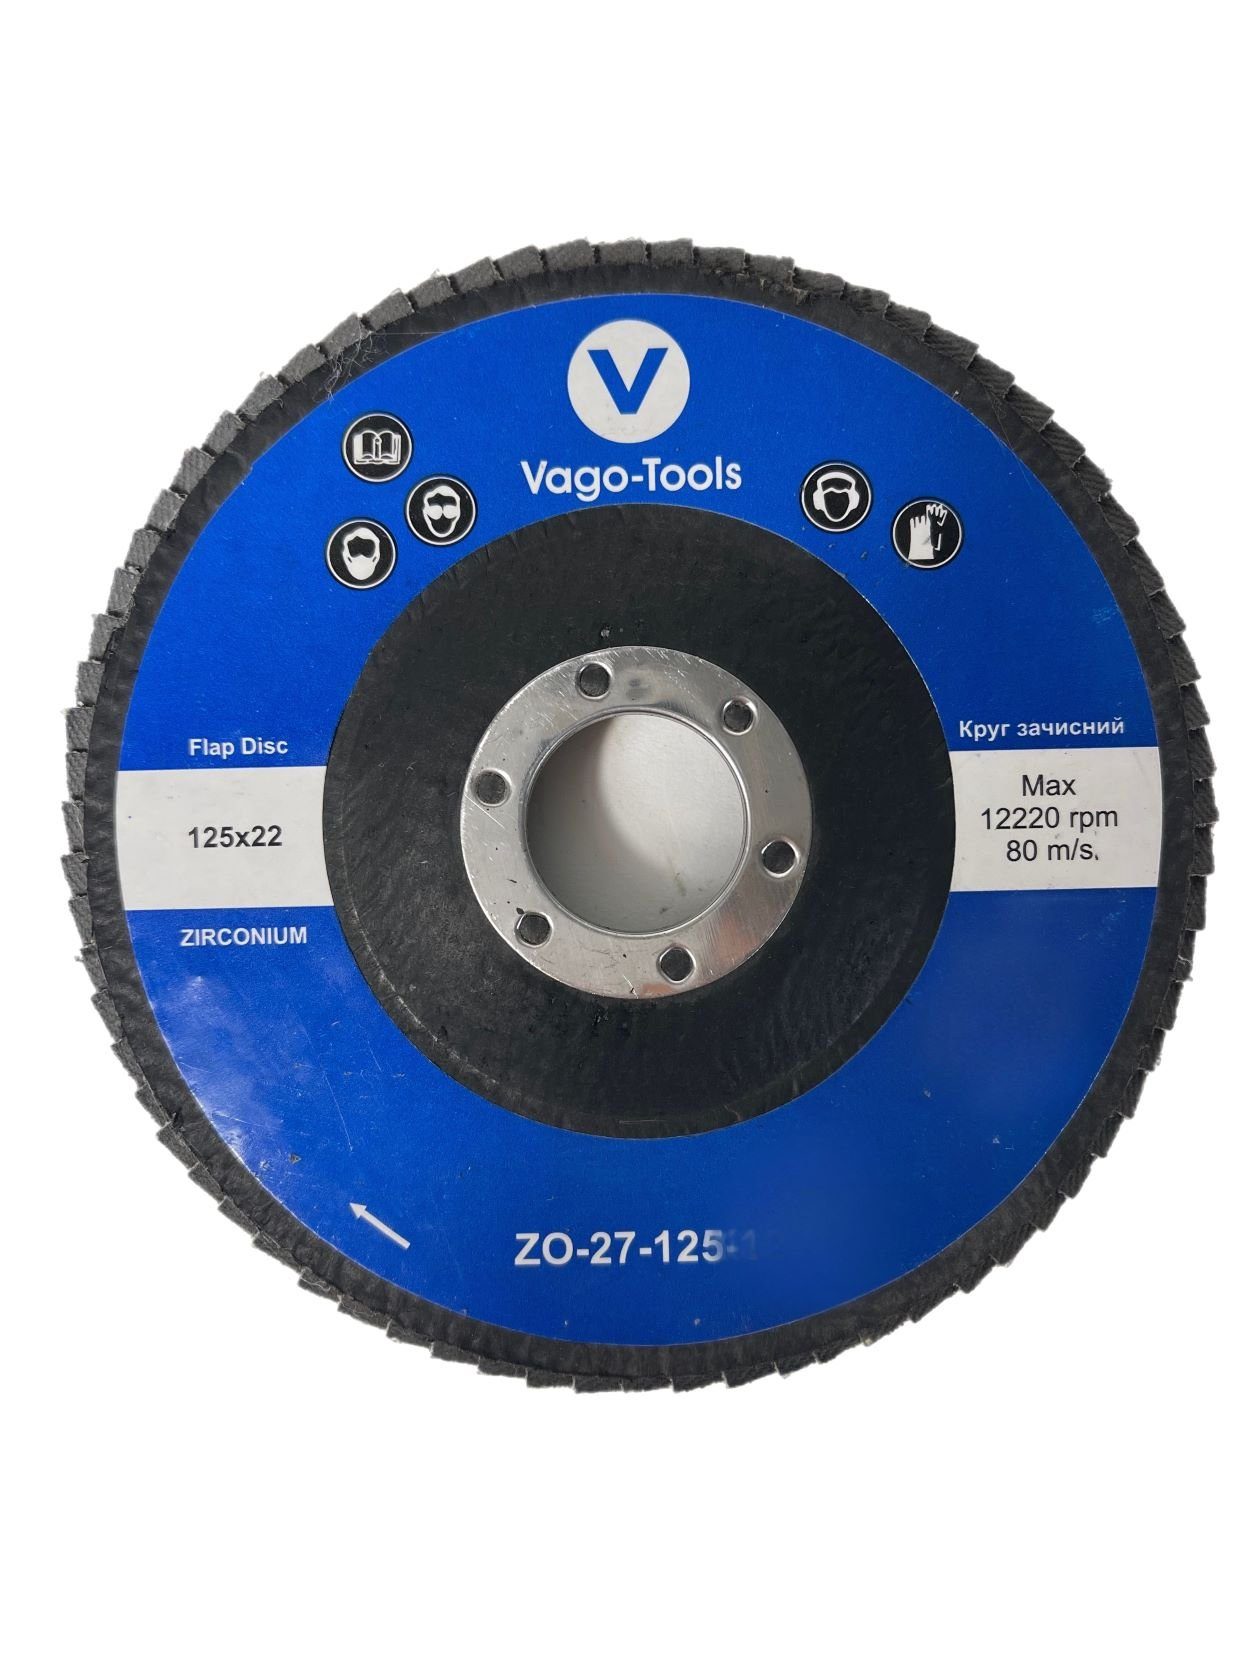 VaGo-Tools Schleifscheibe Fächerschleifscheiben 125mm P100 flach Blau 50x, (Packung)